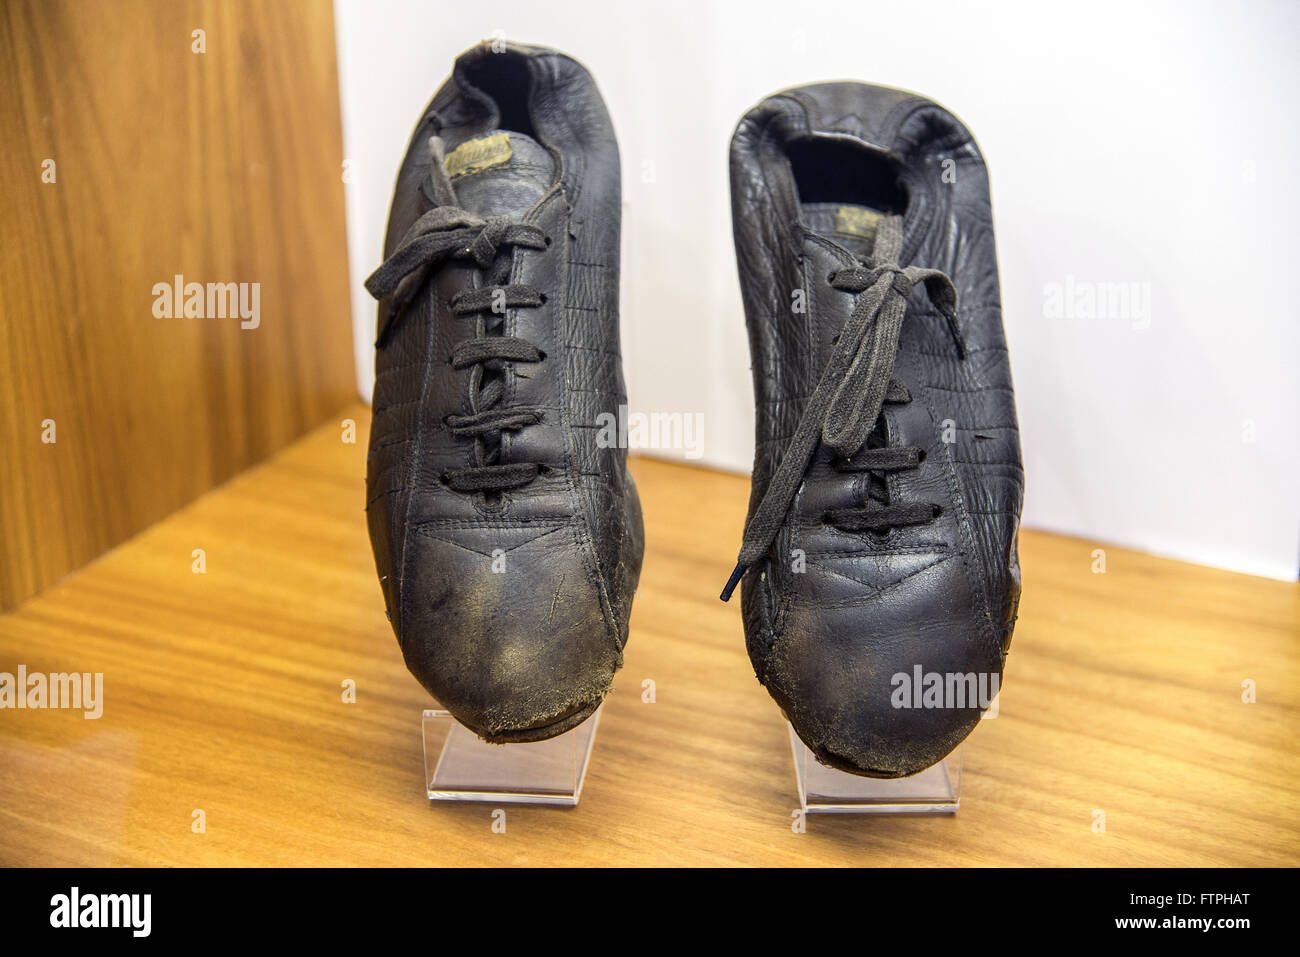 Stollen von Pele-Football-Spieler am Anfang seiner Karriere - Haut-Museum genutzt Stockfoto